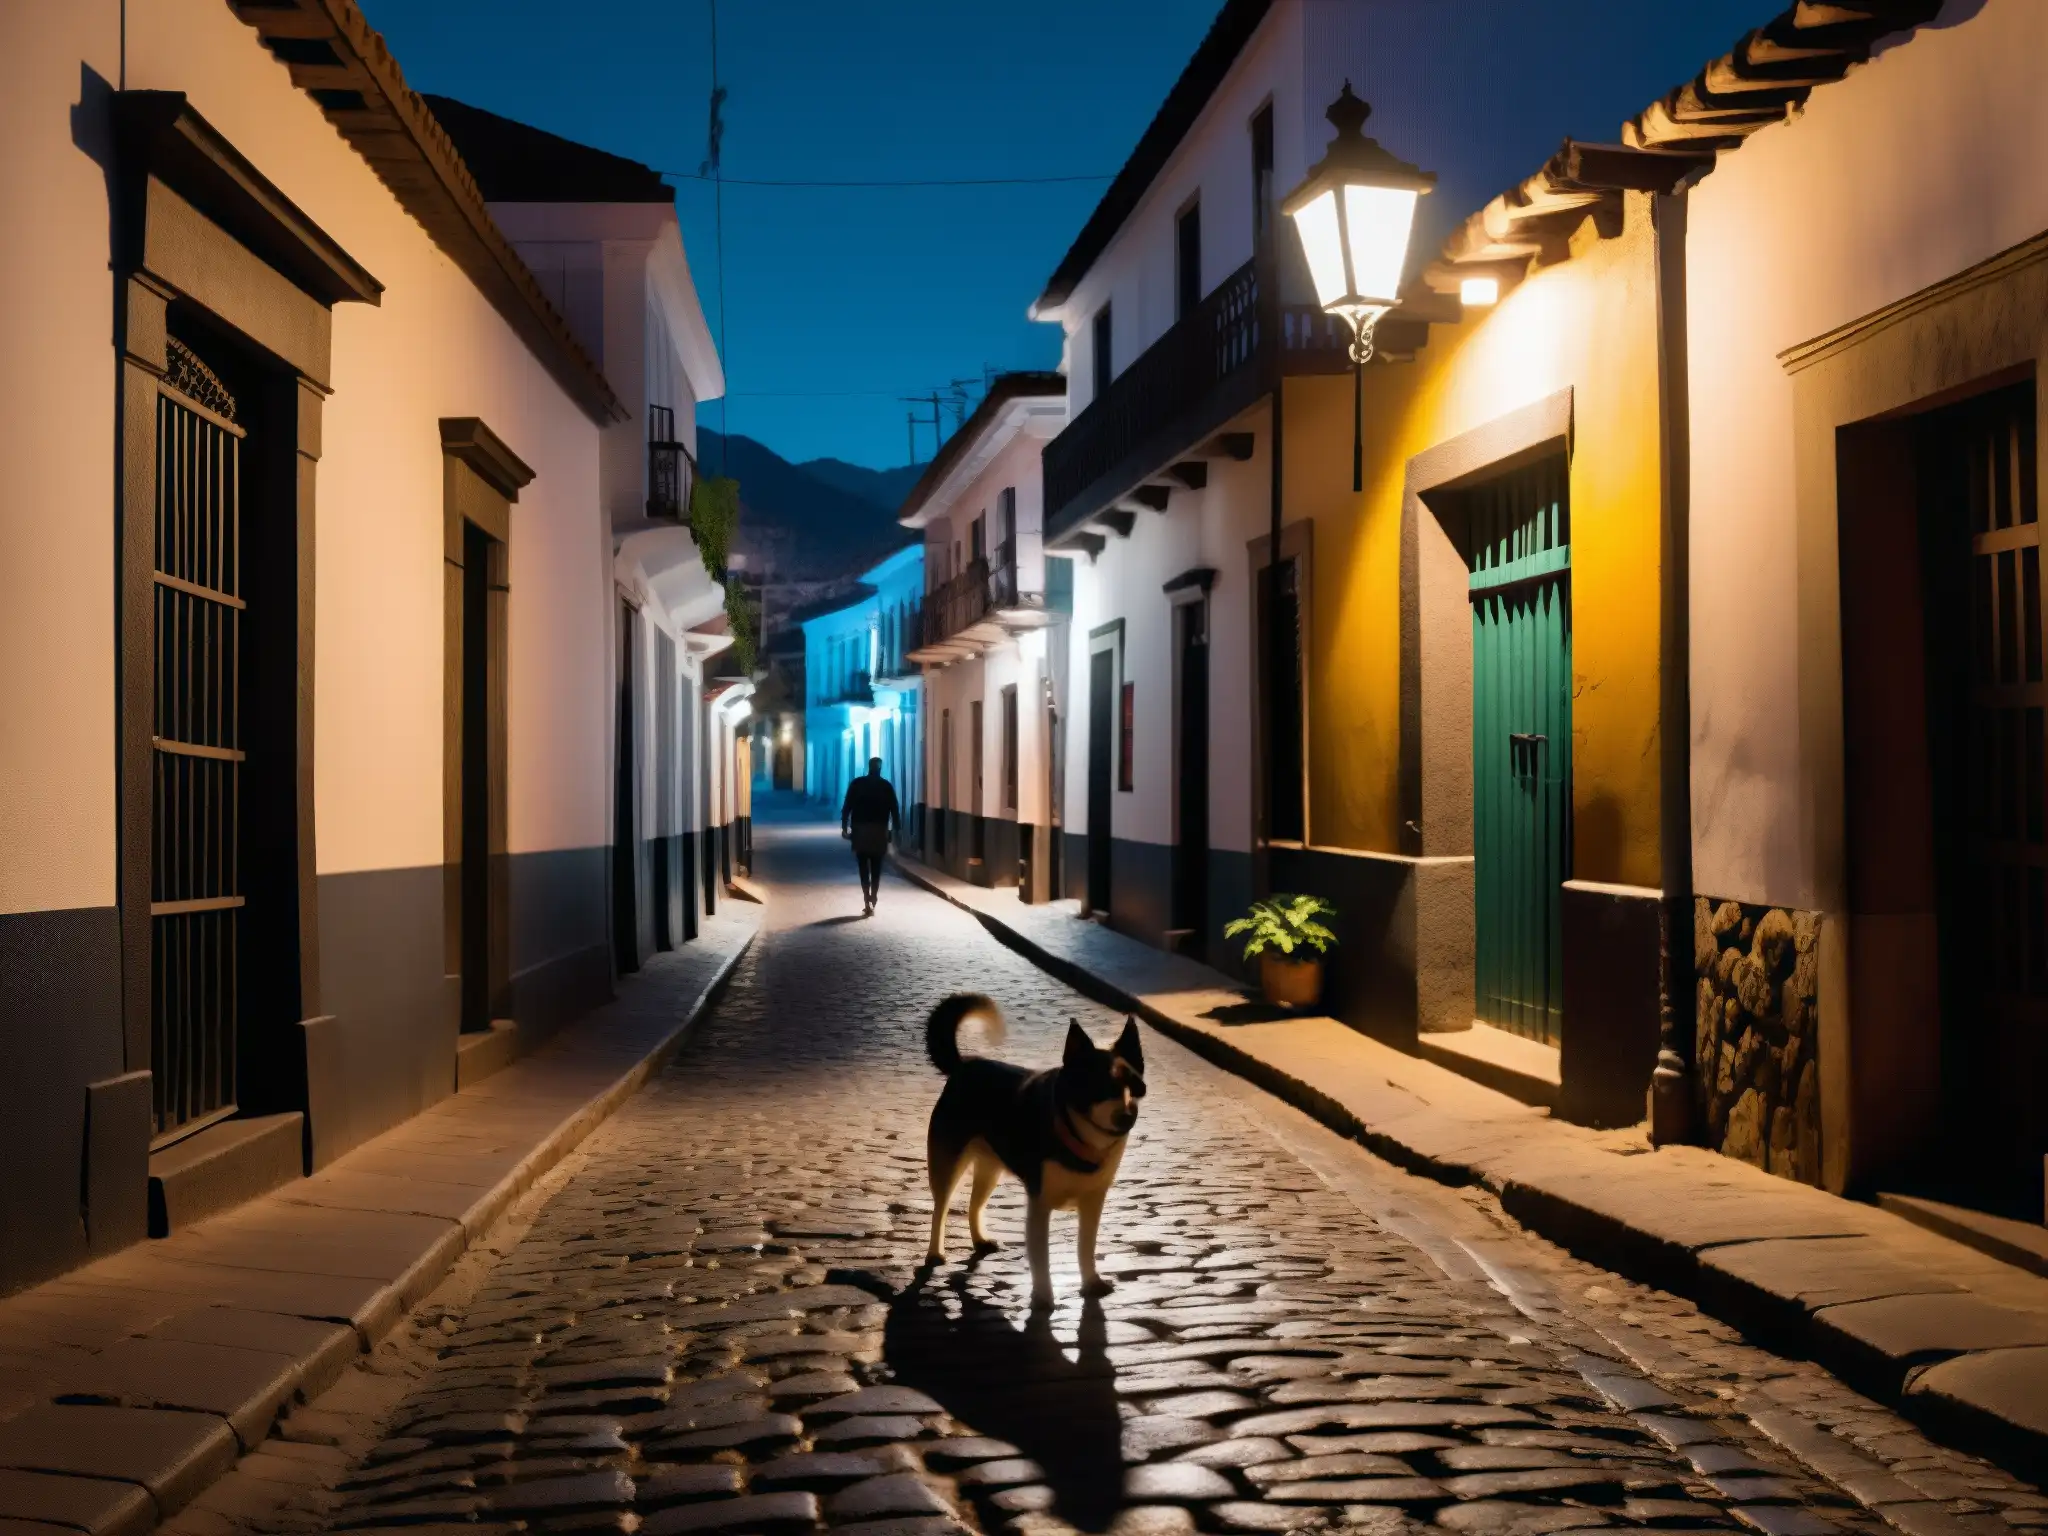 Realidad paranormal en las noches sudamericanas: calle solitaria iluminada por luces de la calle, figuras misteriosas y perros en las sombras